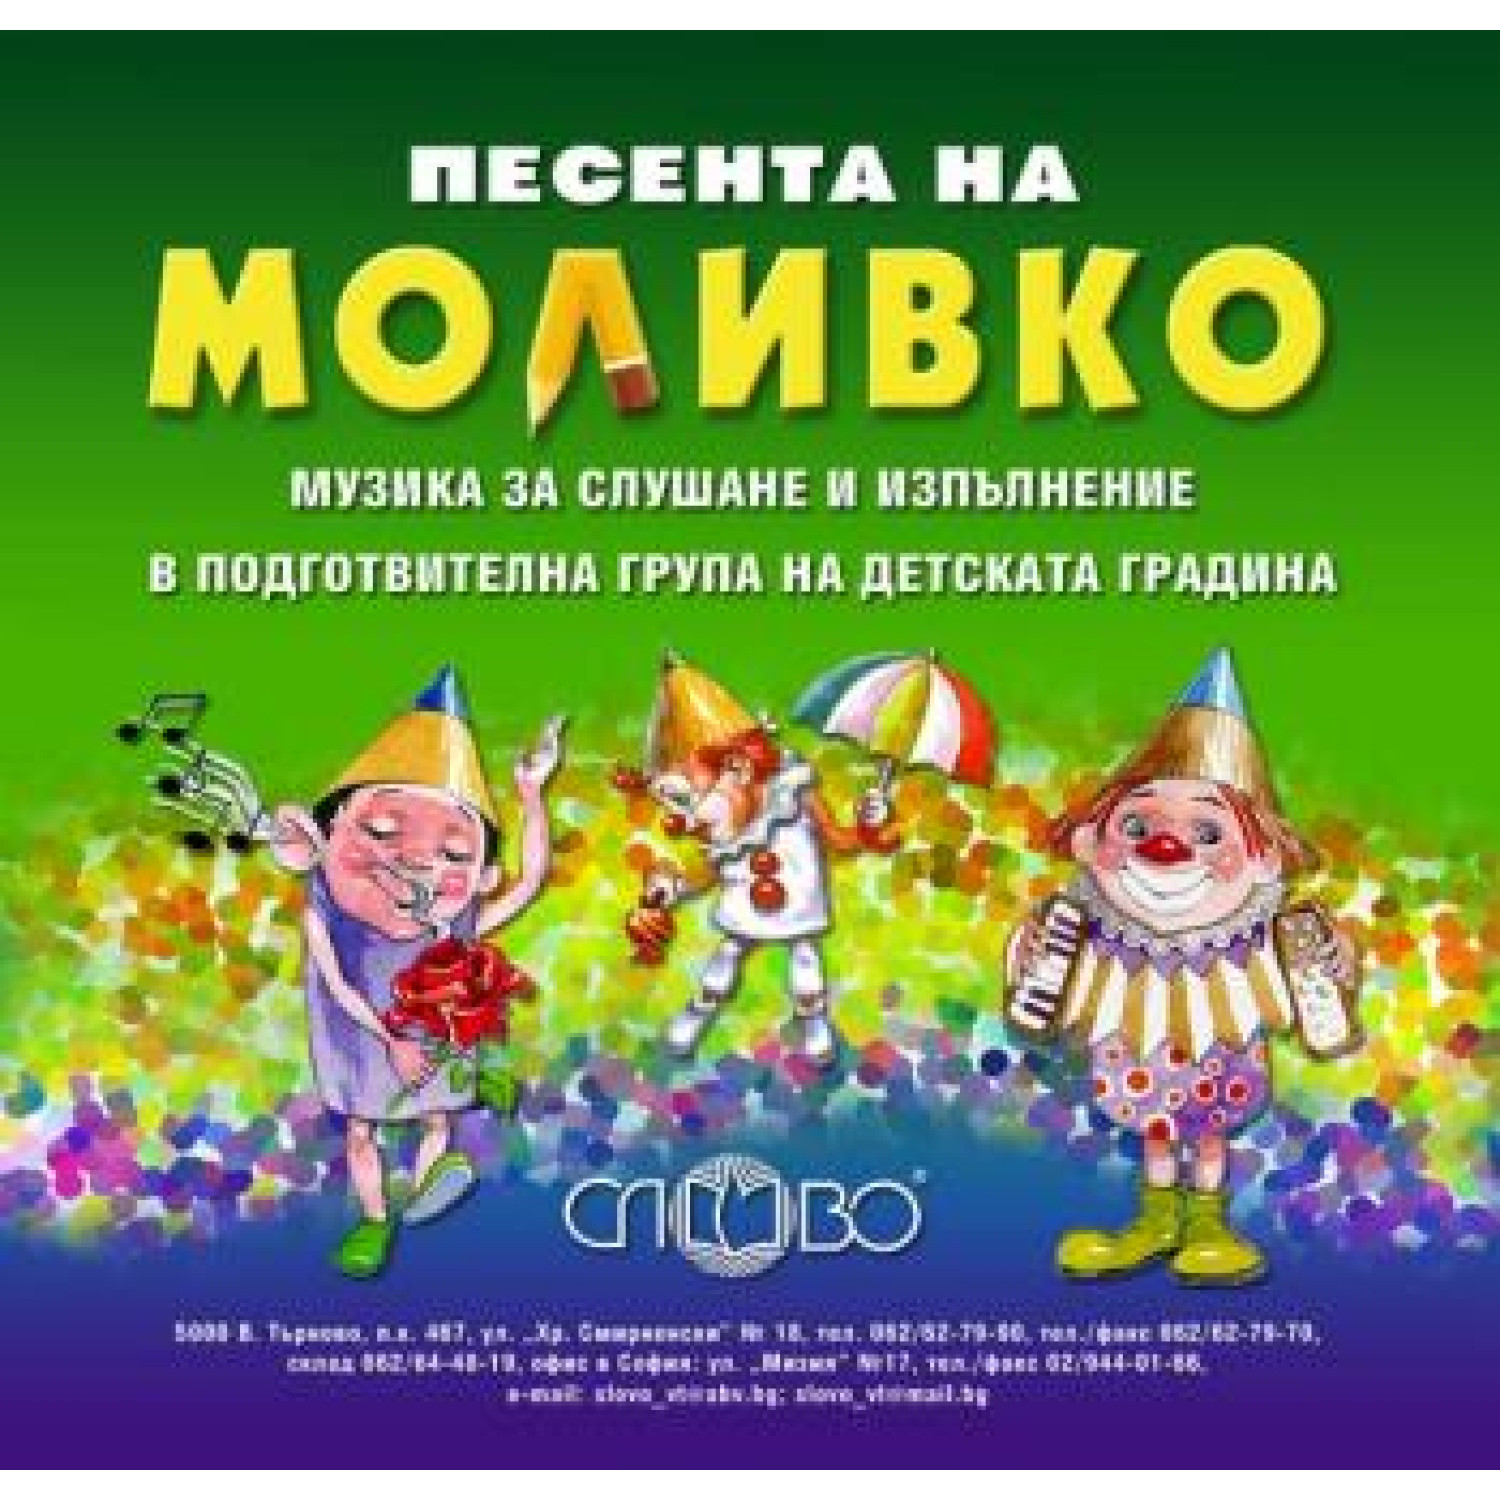 Песента на Моливко - музика за слушане и изпълнение, 6-7 години